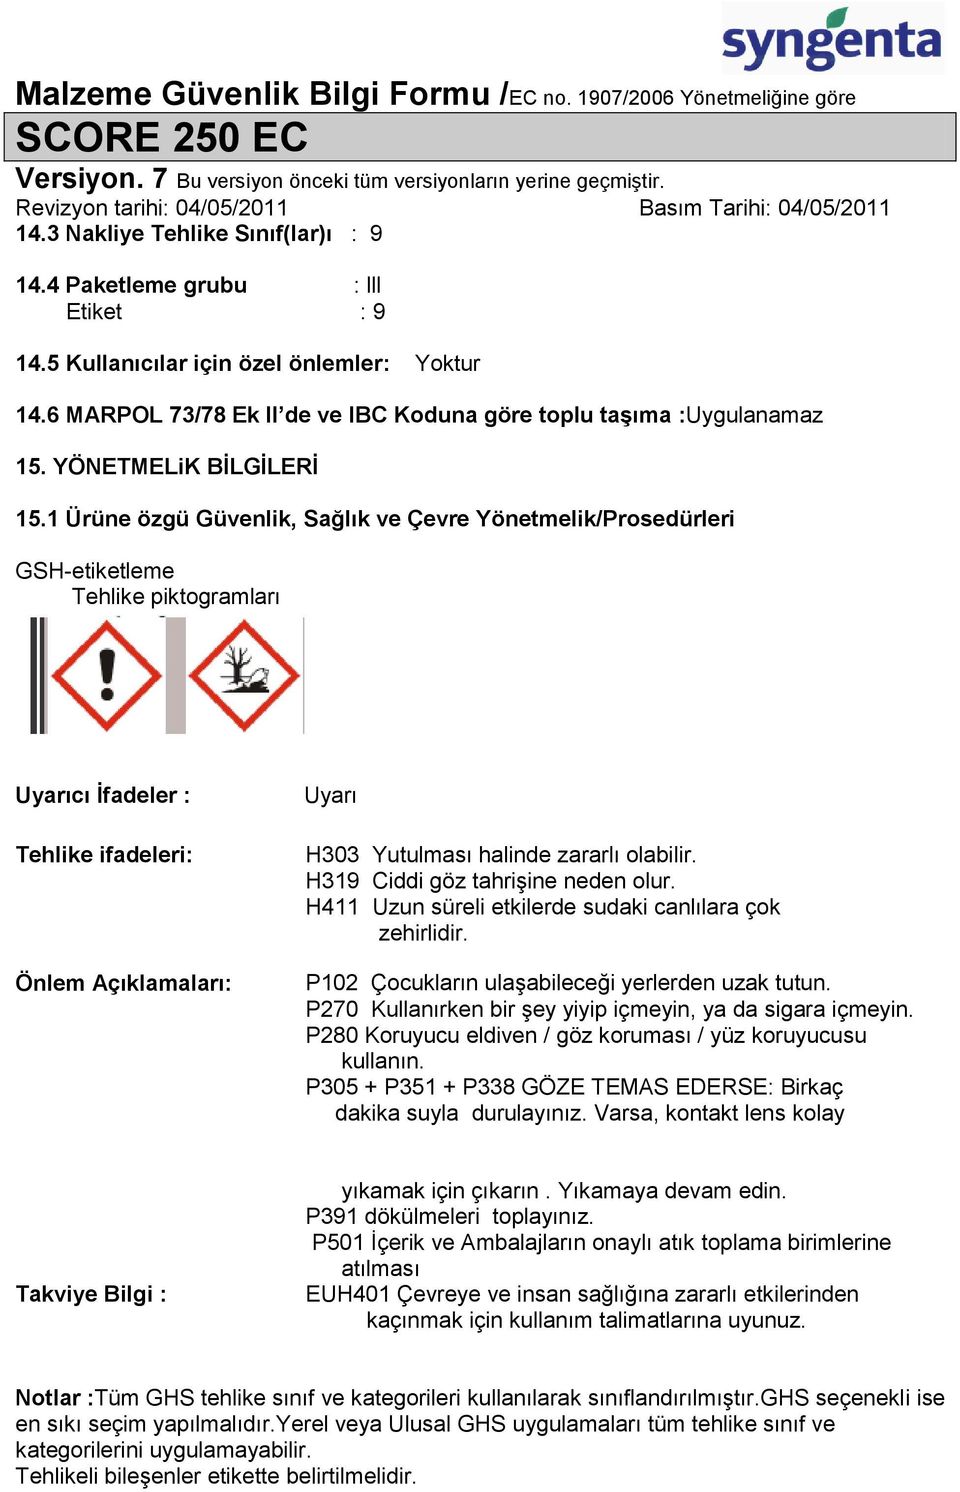 1 Ürüne özgü Güvenlik, Sağlık ve Çevre Yönetmelik/Prosedürleri GSH-etiketleme Tehlike piktogramları Uyarıcı Ġfadeler : Tehlike ifadeleri: Önlem Açıklamaları: Uyarı H303 Yutulması halinde zararlı